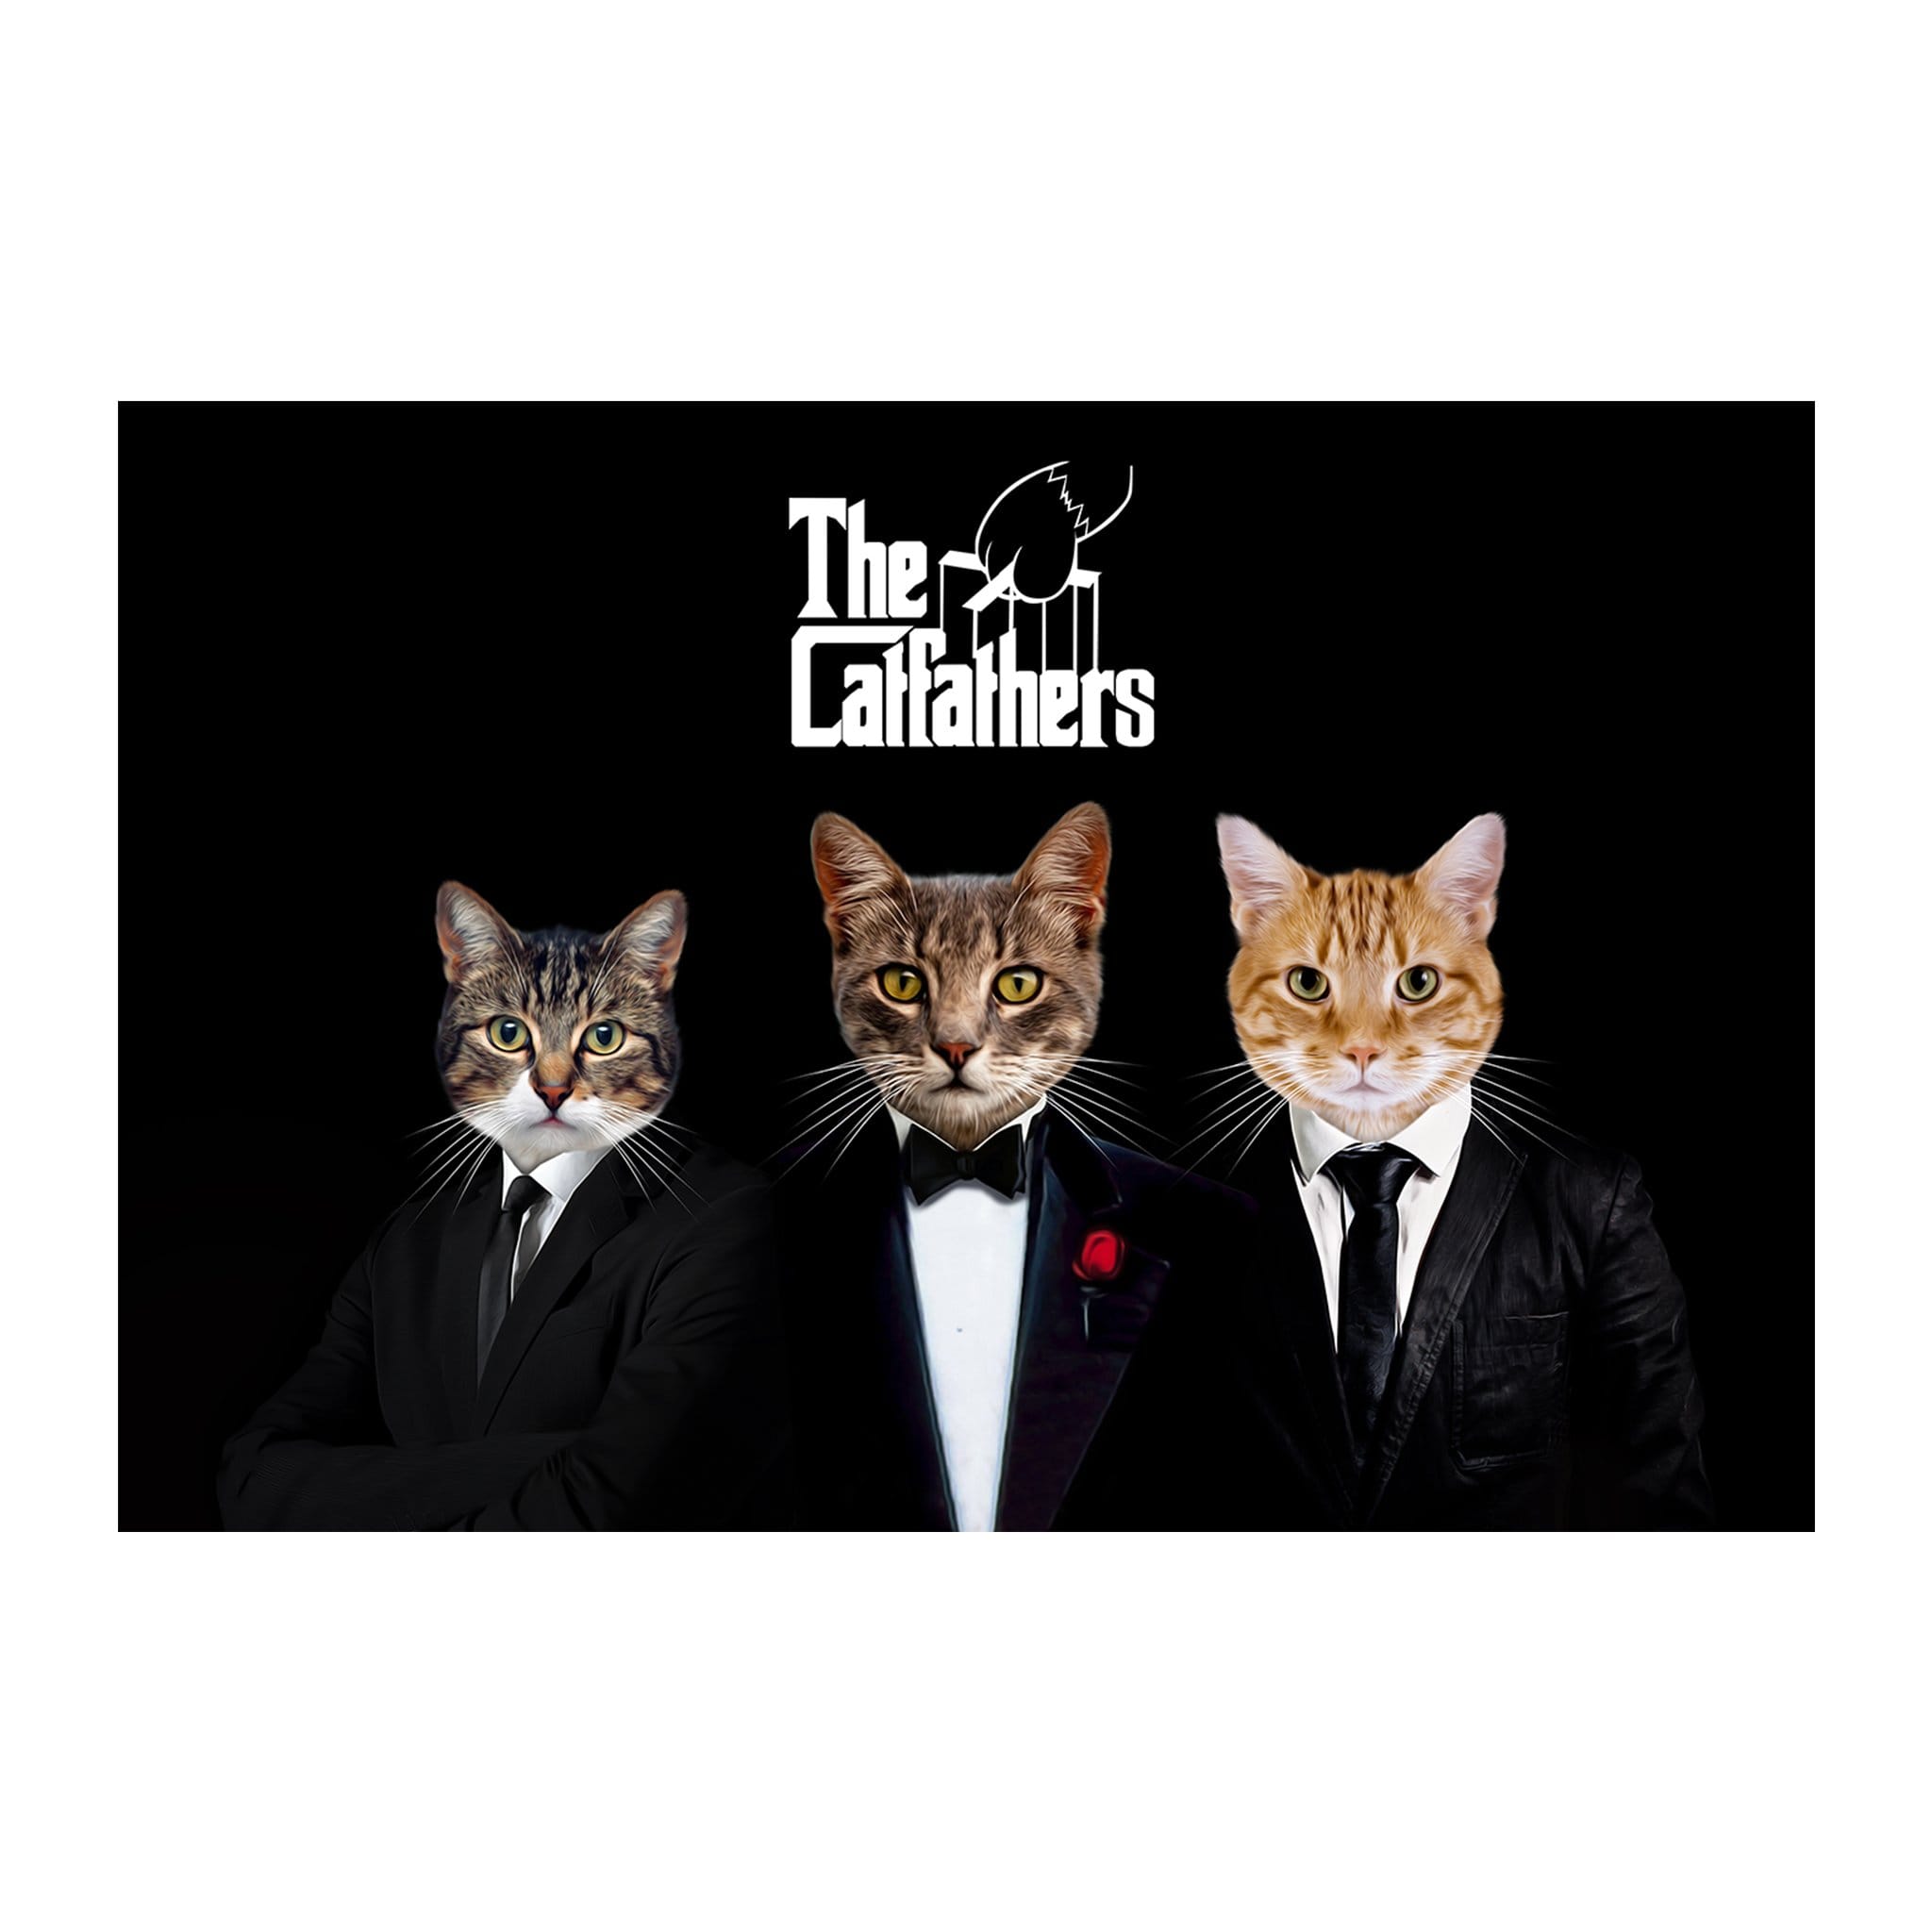 &#39;The Catfathers&#39; 3 Pet Digital Portrait